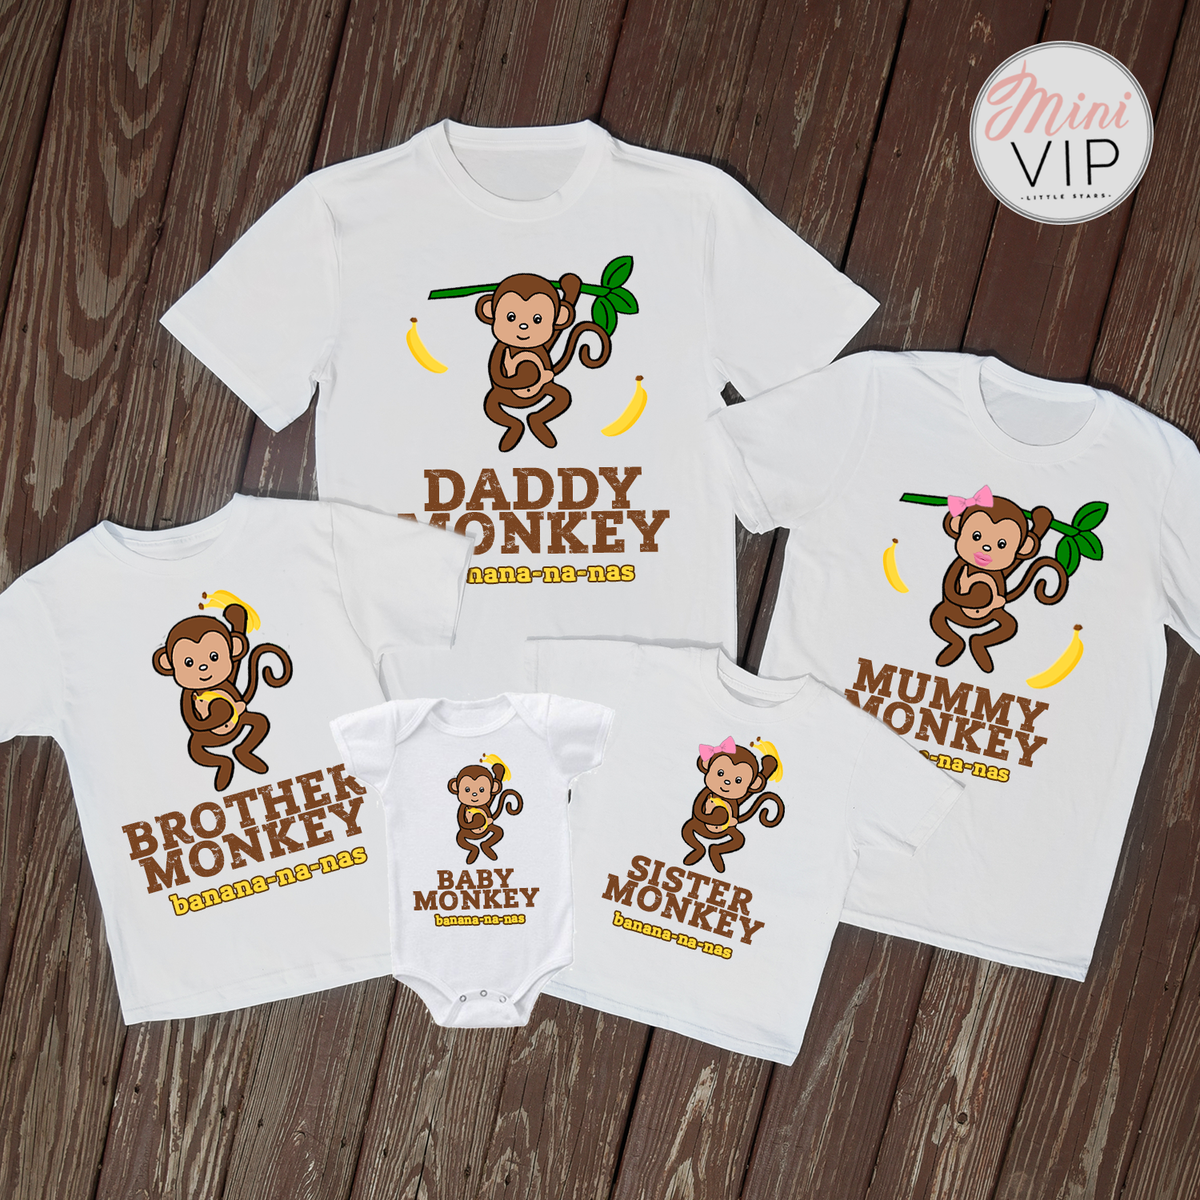 Monkey Banana-na-nas t-shirts - adult sizes